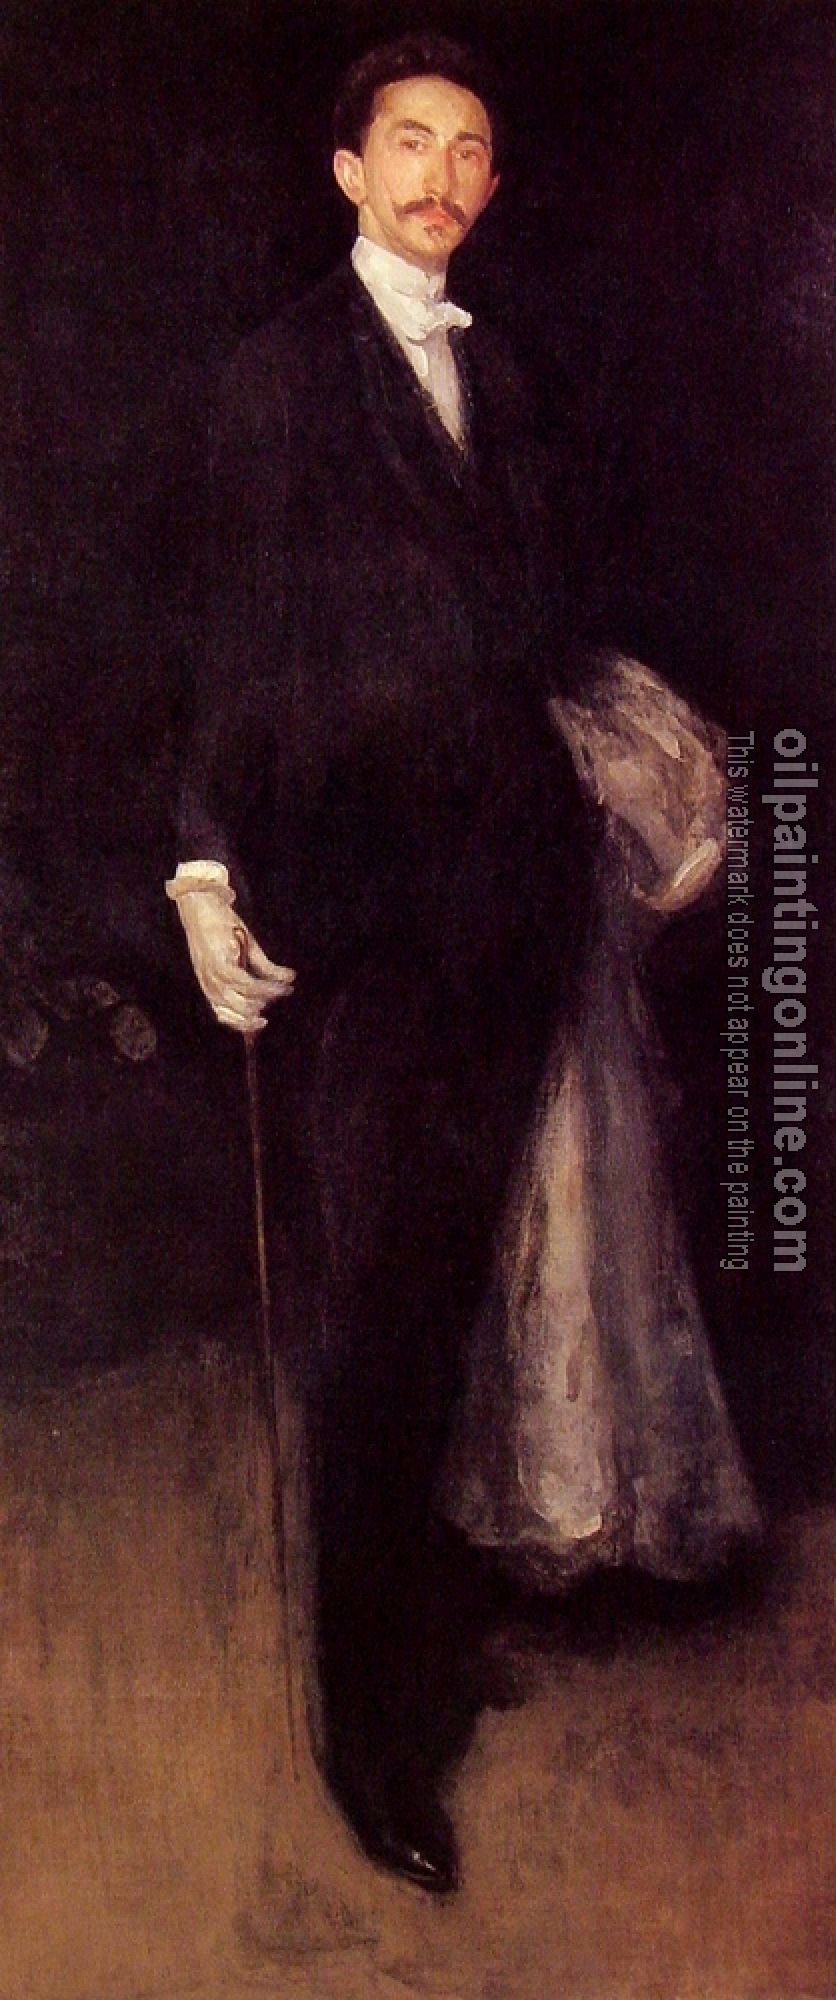 Whistler, James Abbottb McNeill - Comte Robert de Montesquiou-Fezensac